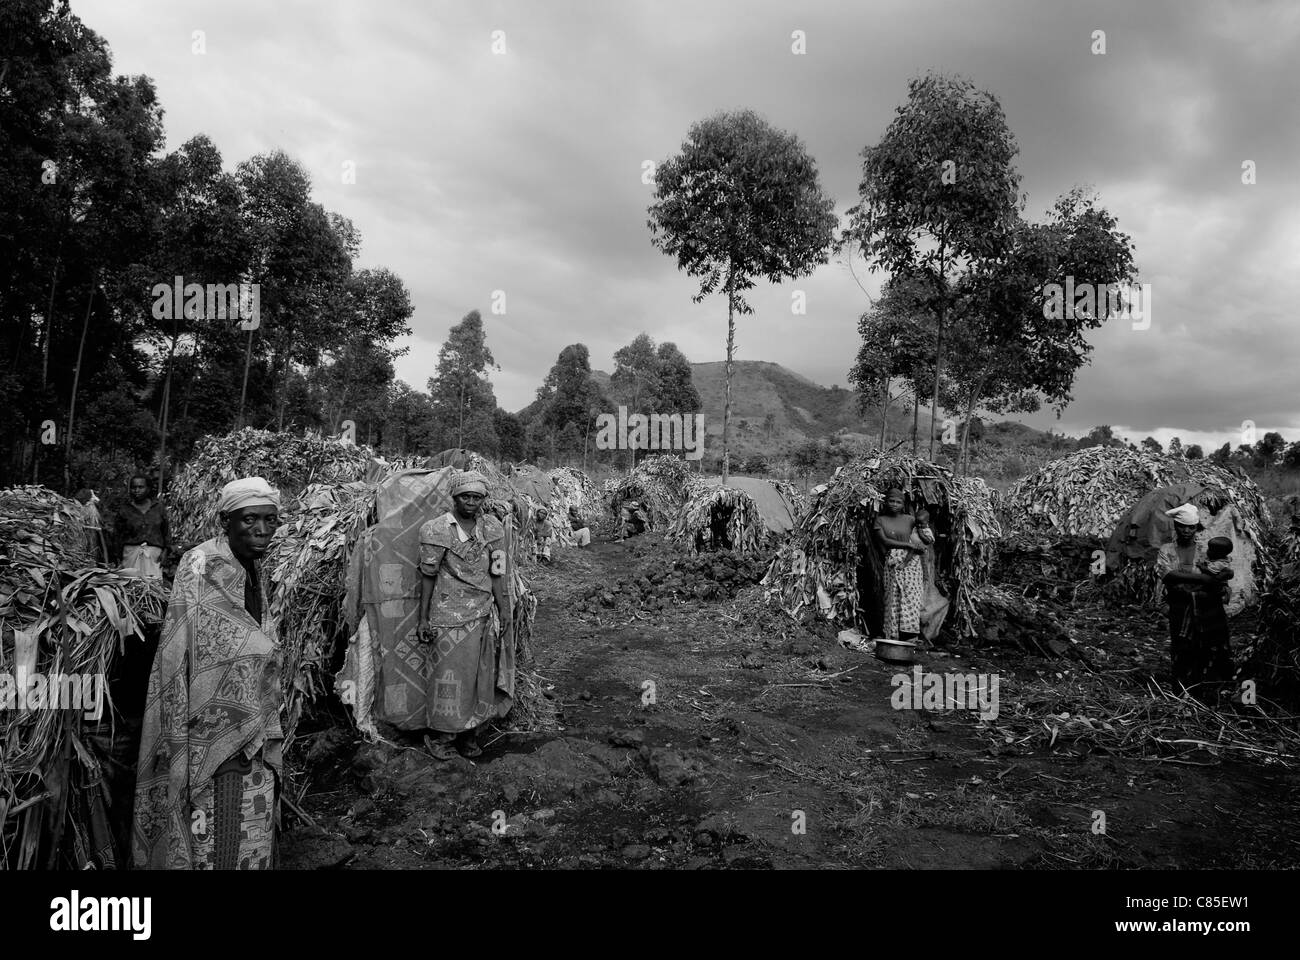 Un groupe de femmes congolaises déplacées à l'intérieur du pays se trouve devant des cabanes de paille de fortune dans un camp de déplacés de fortune au Nord-Kivu, en RD Congo, en Afrique Banque D'Images